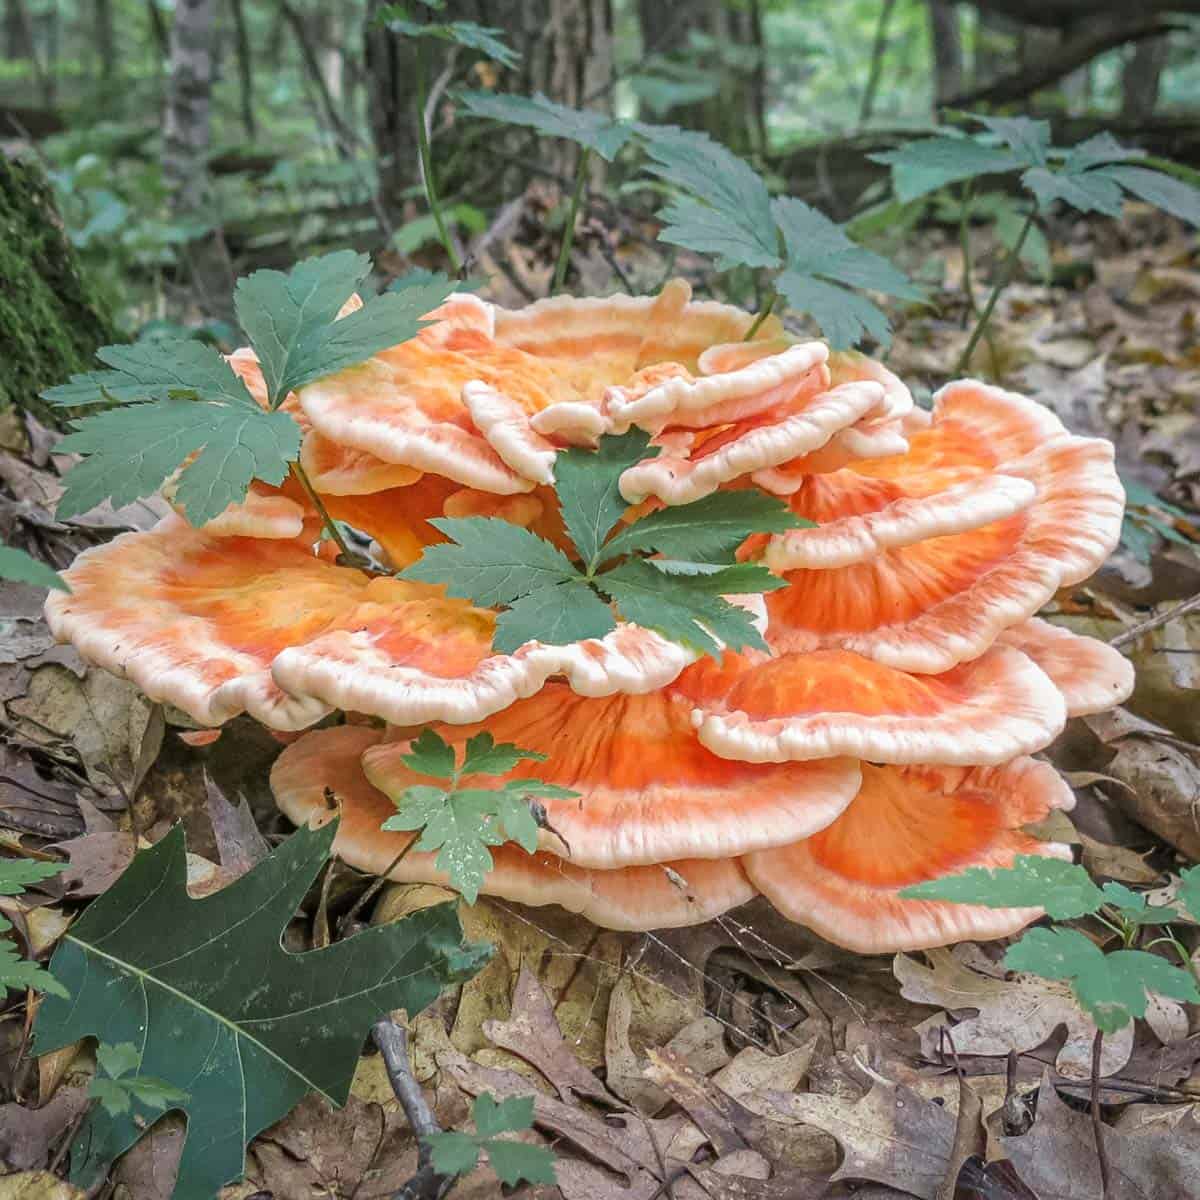 Chicken of the woods mushroom or laetiporus cincinnatus